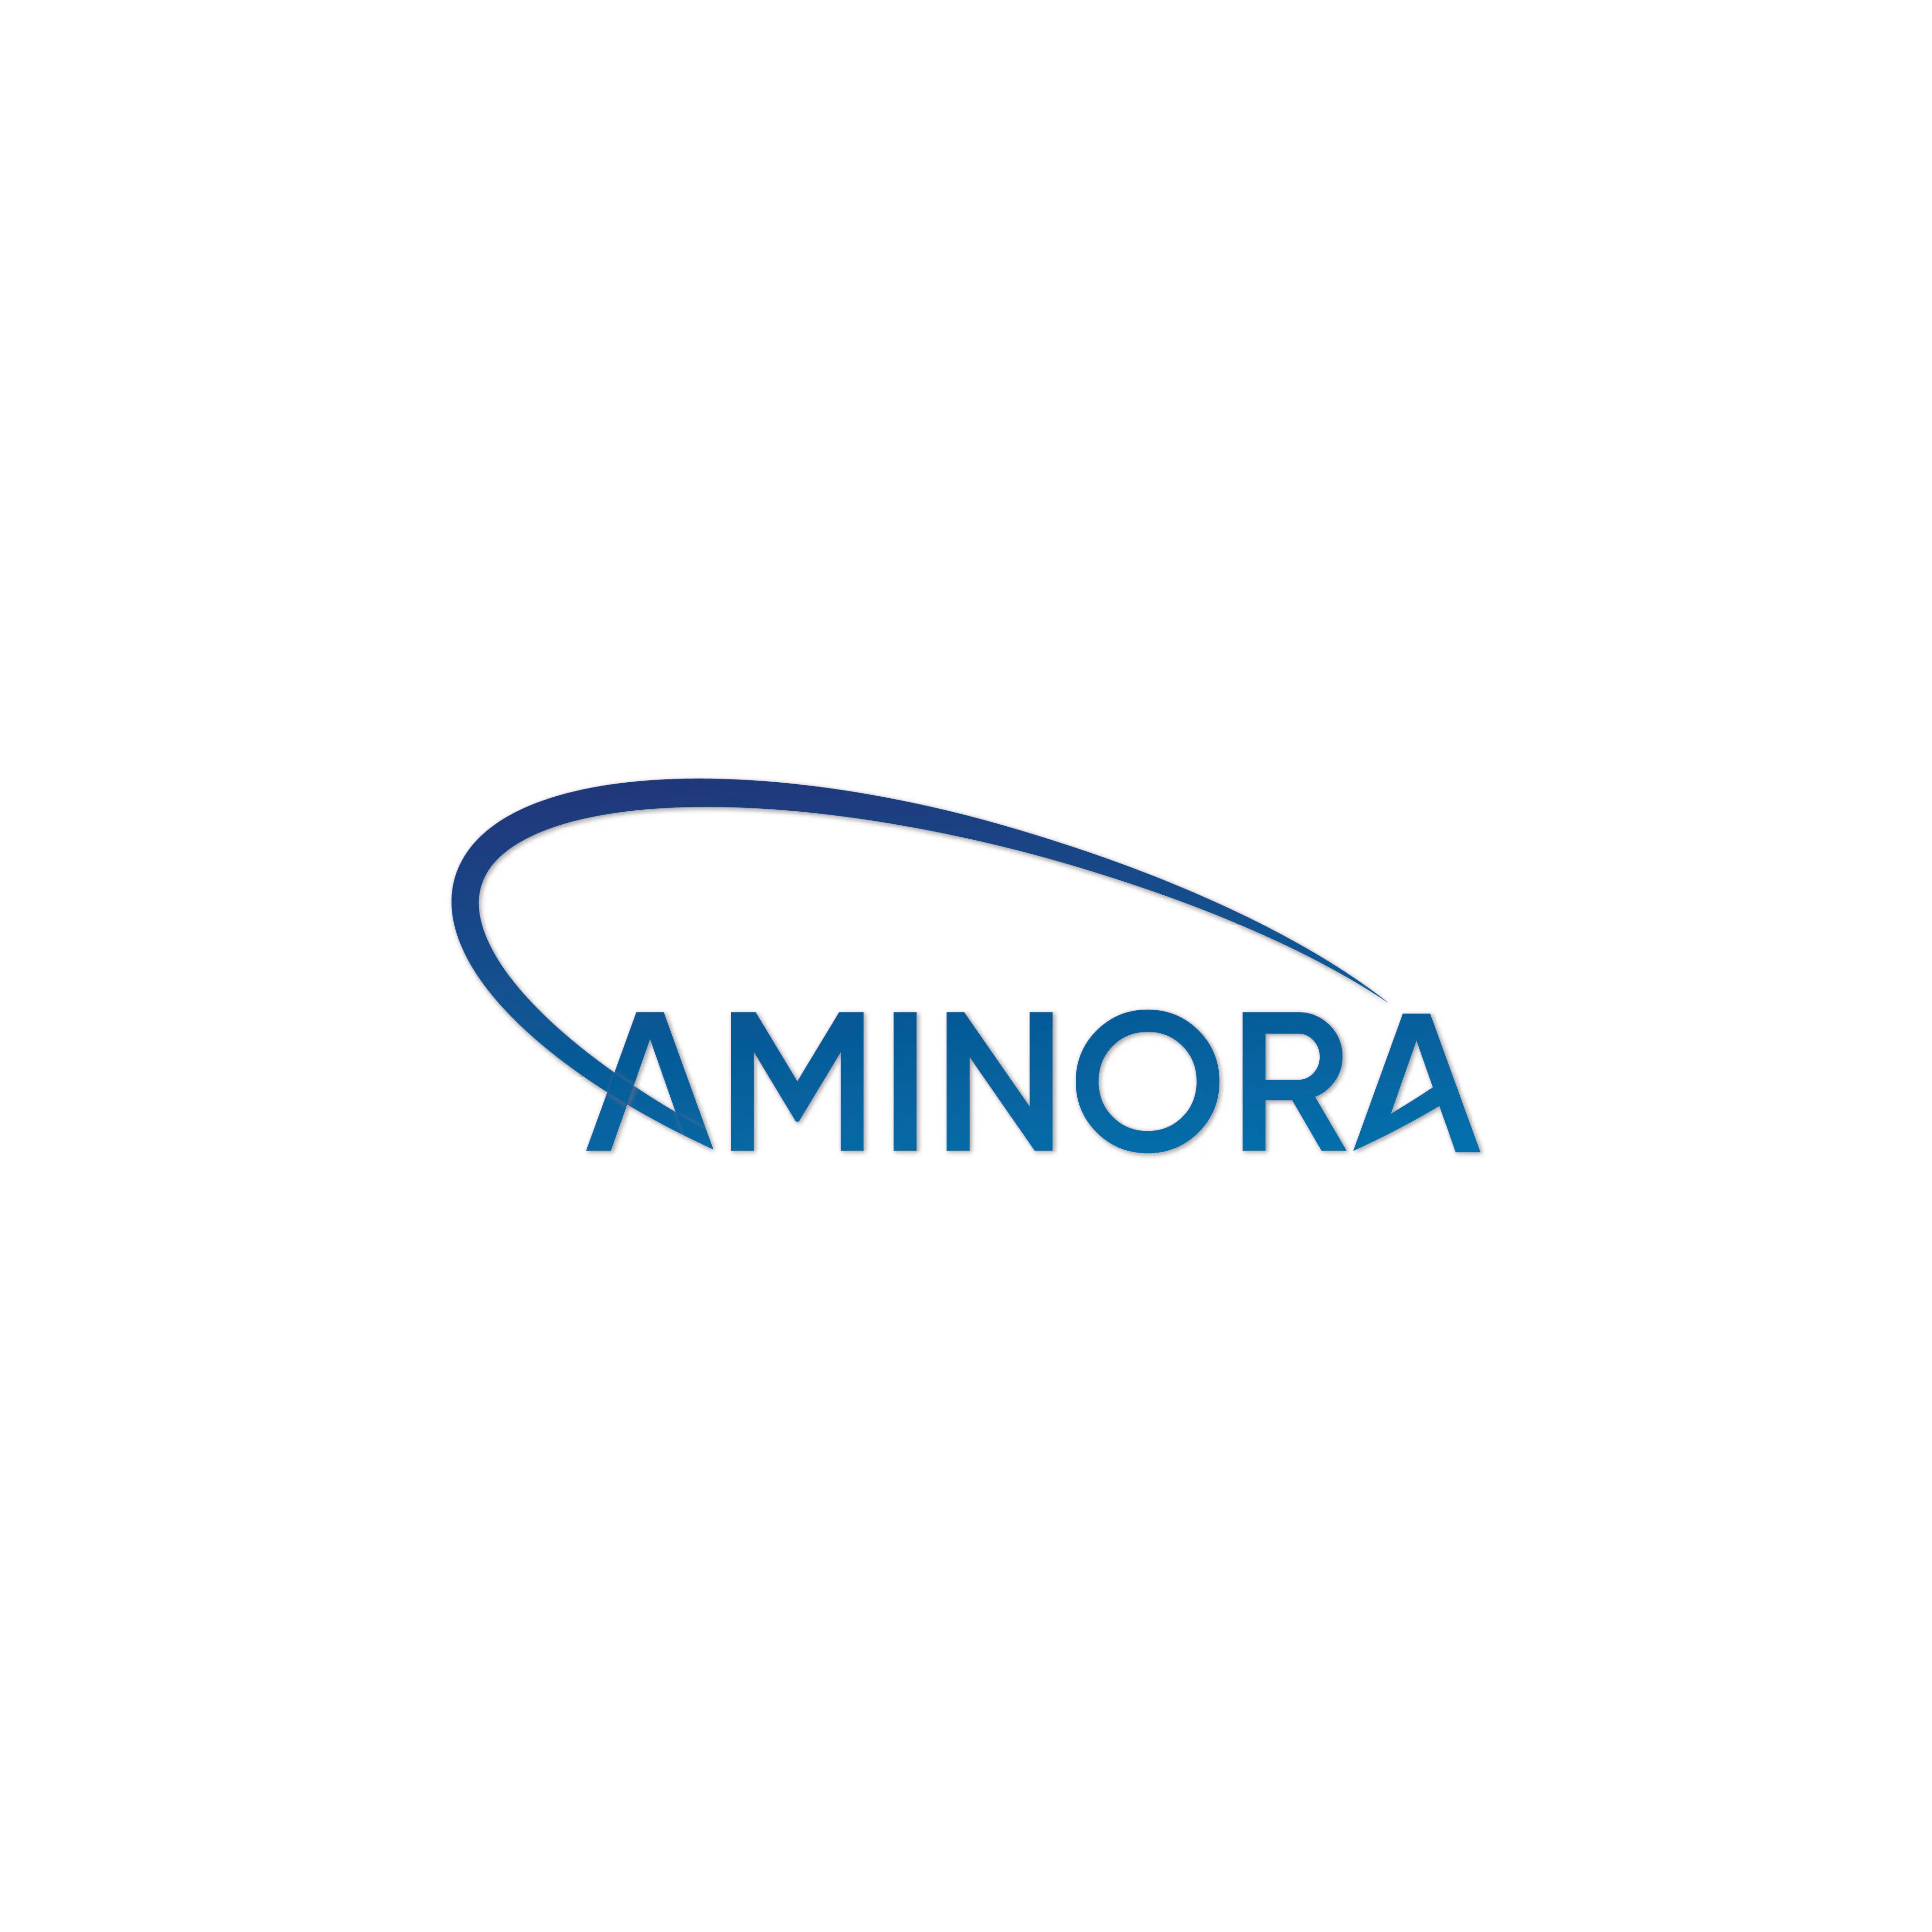 Aminora GmbH